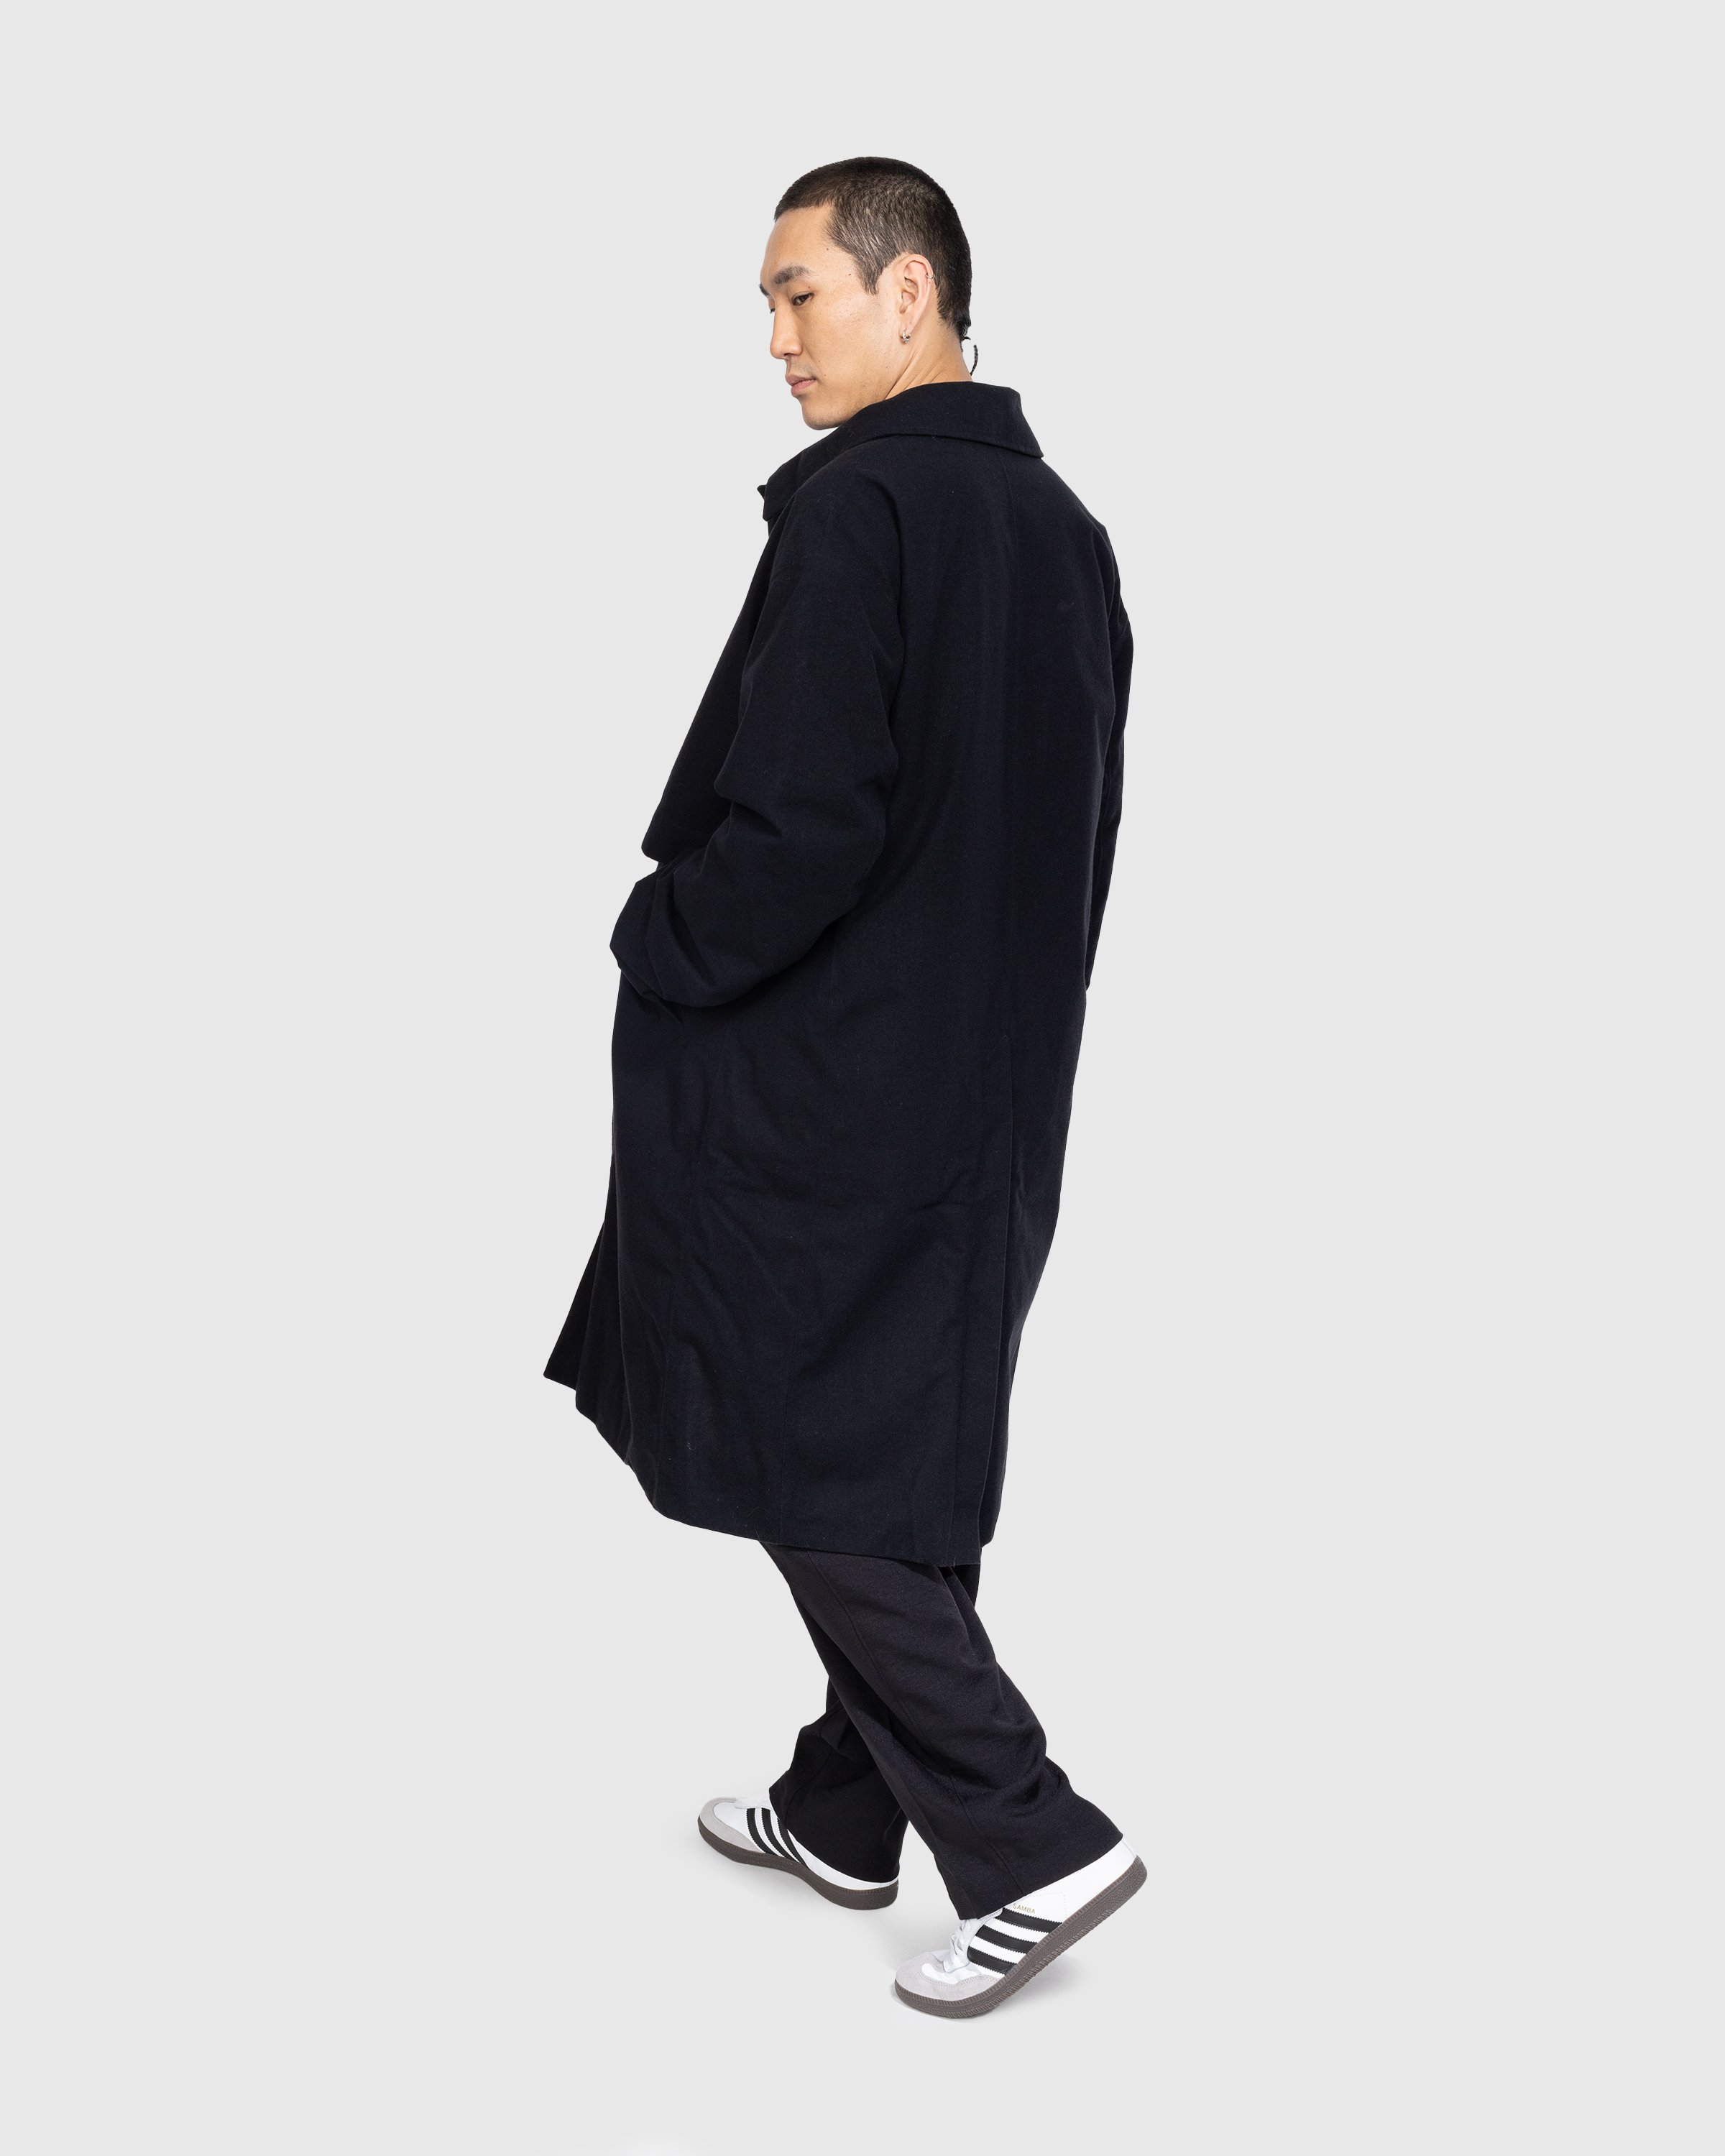 Y-3 - CL RGTX Coat - Clothing - Black - Image 3